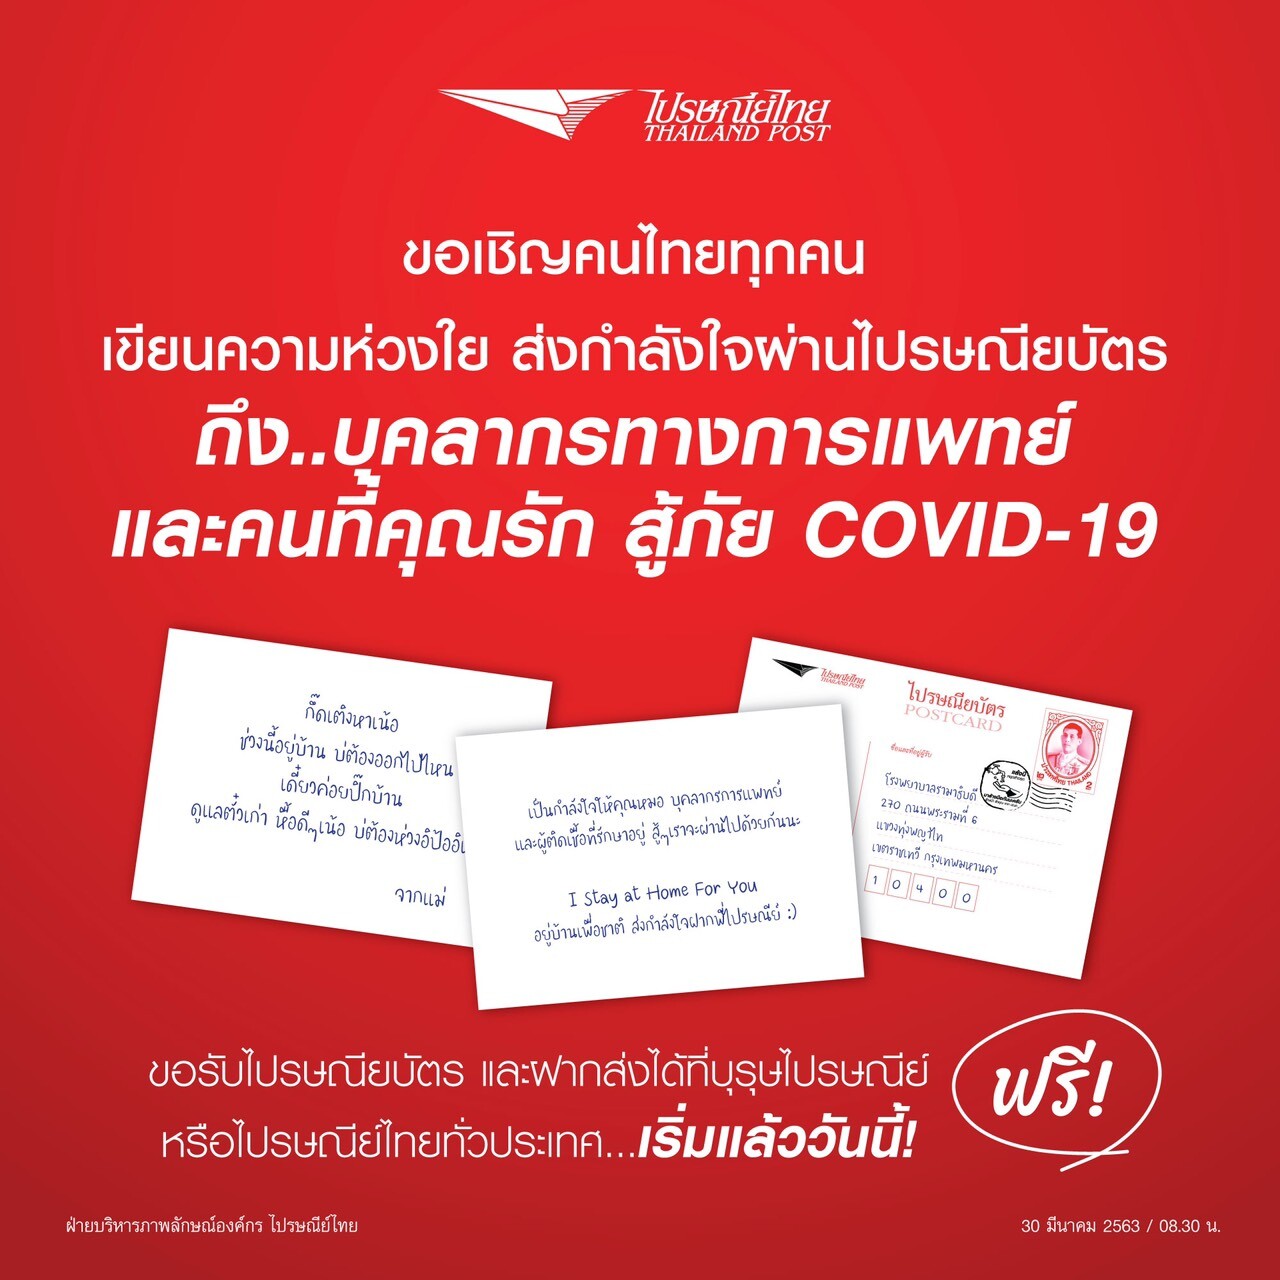 ไปรษณีย์ไทย ชวนคนไทยเขียนไปรษณียบัตร  “ส่งความห่วงใย” สู้ COVID – 19 ให้บุคลากรทางการแพทย์ และคนที่คุณรัก ฟรี!